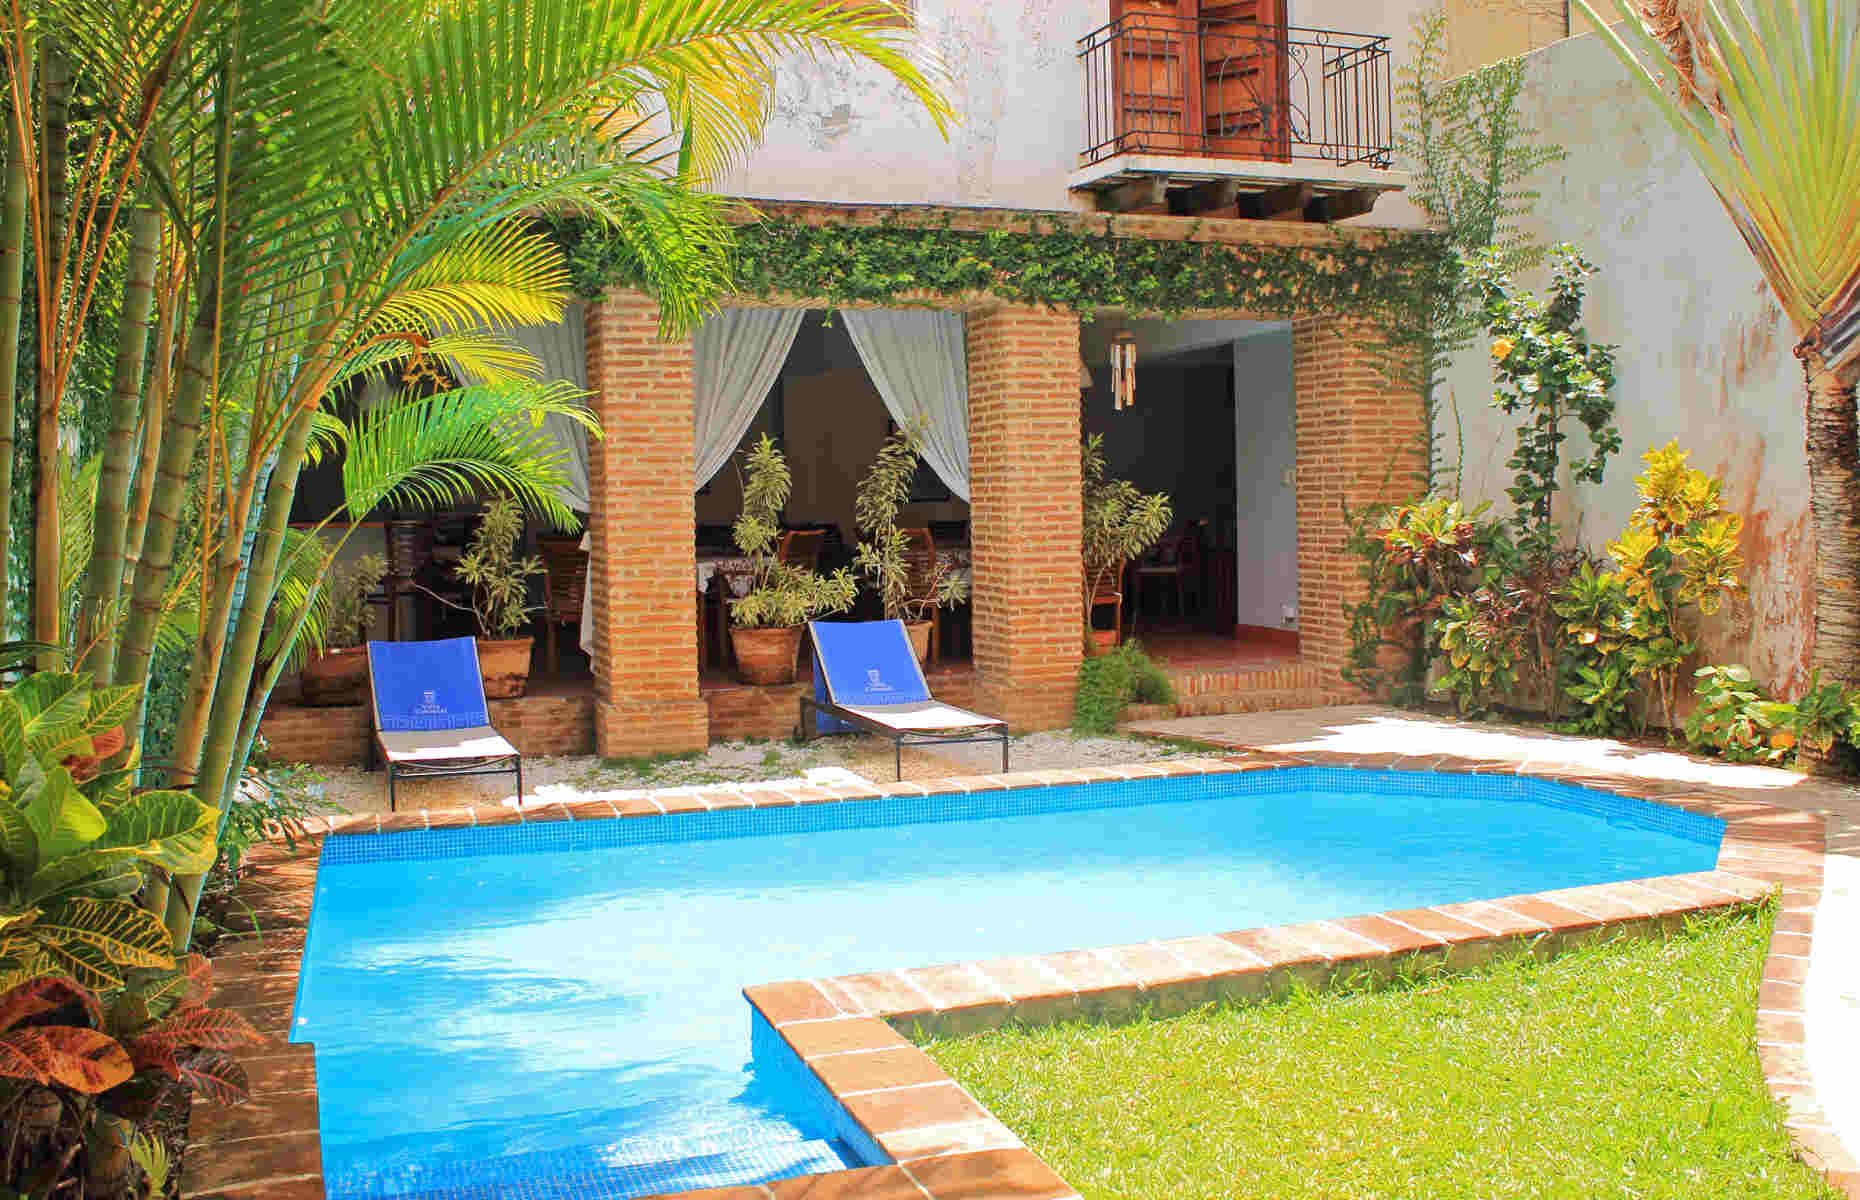 Villa Colonial - Hotel à Santo Domingo, République Dominicaine